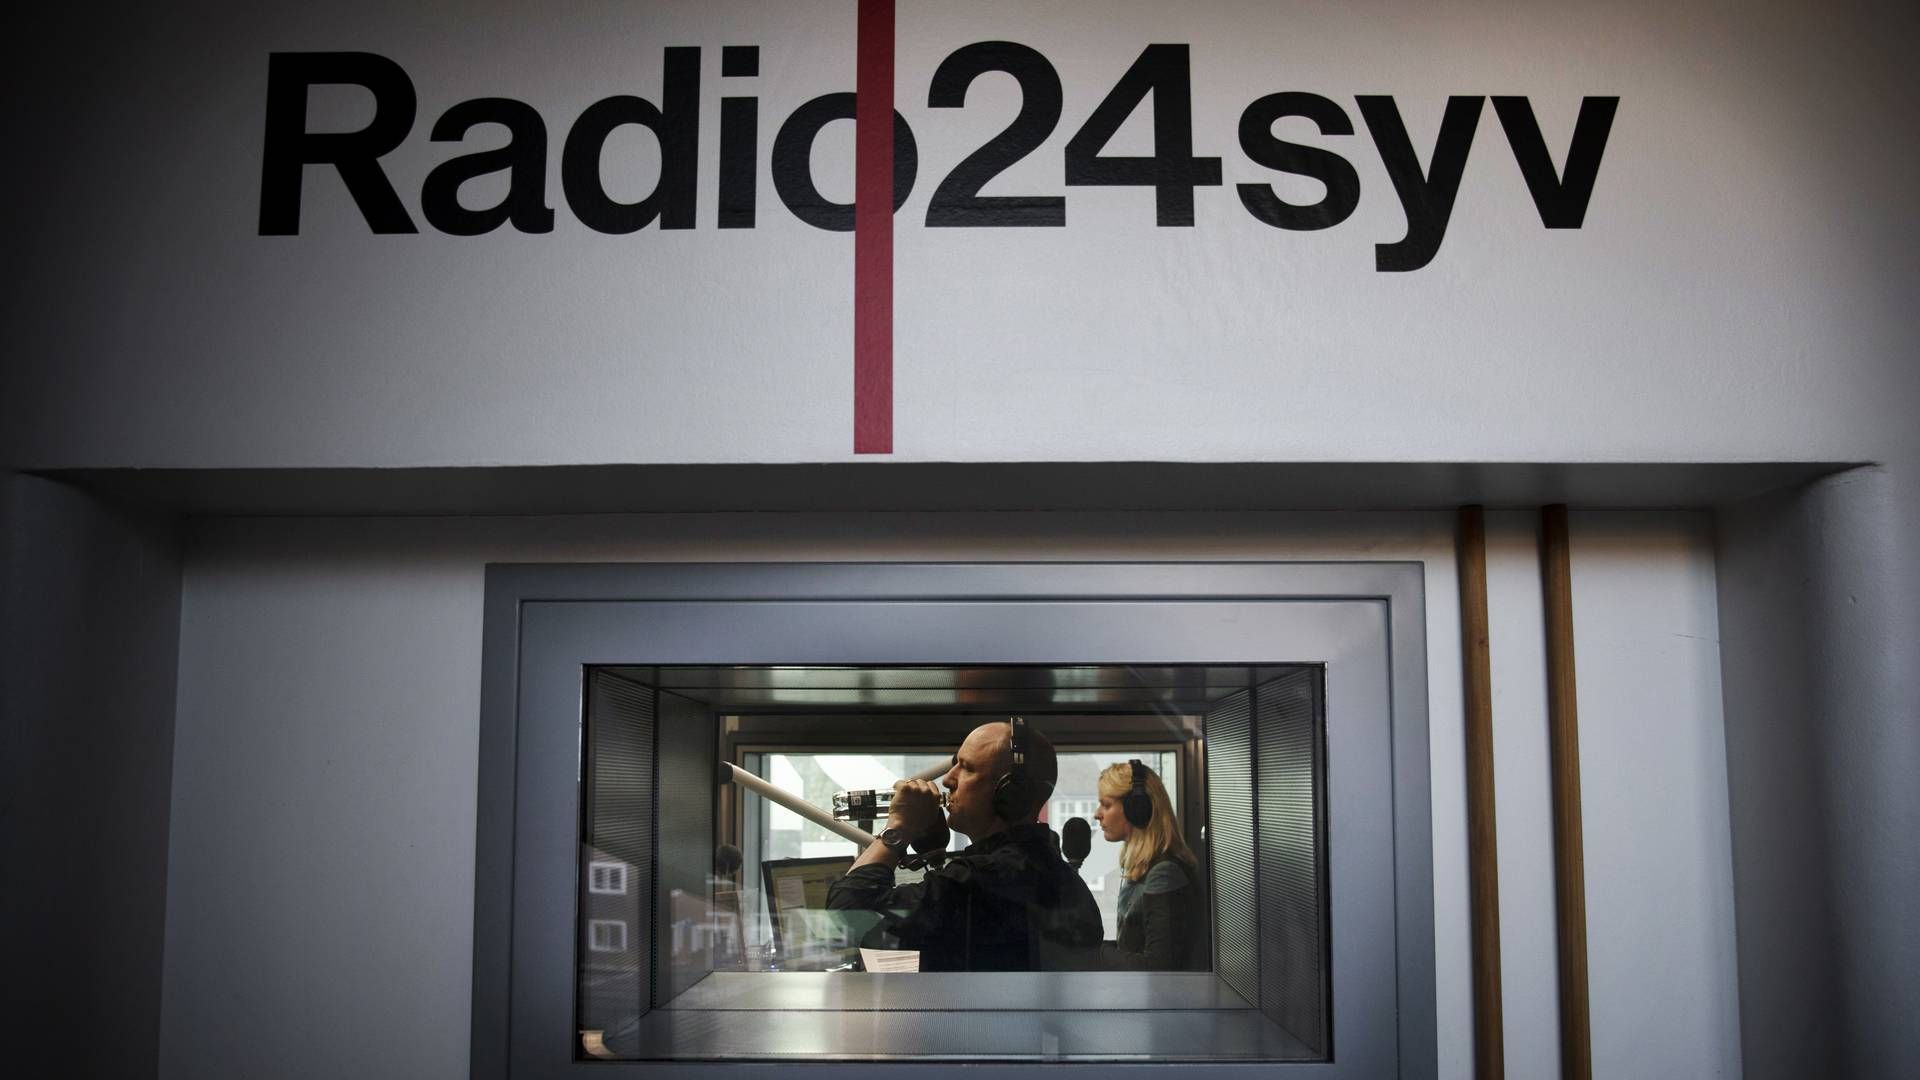 Radio24syv tabte kampen om dab-udbuddet under stor mediebevågenhed. Processen er siden blevet kritiseret af både eksperter og en lang række politiske partier, der mener, at processen, der førte til, at udbuddet gik til Loud har været fejlbehæftet. | Foto: Asger Ladefoged / Ritzau Scanpix